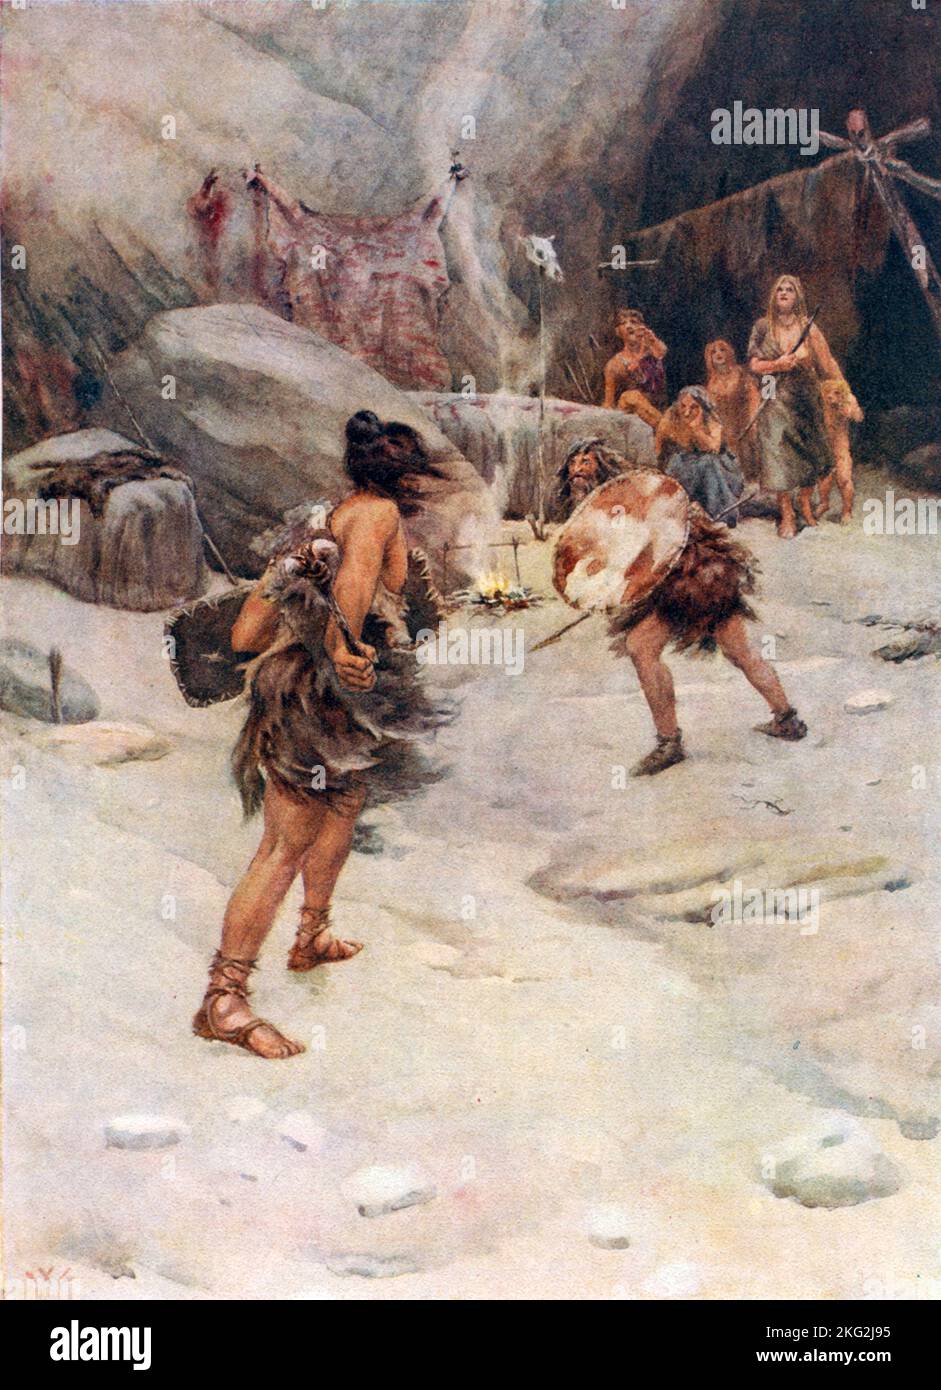 Vintage-Illustration um 1900, die prähistorische Männer in Fellen und Pelzen zeigt, die vor einer Höhle, die von dem Künstler William Wiehe Collins gemalt wurde, in Gefechte verwickelt waren Stockfoto